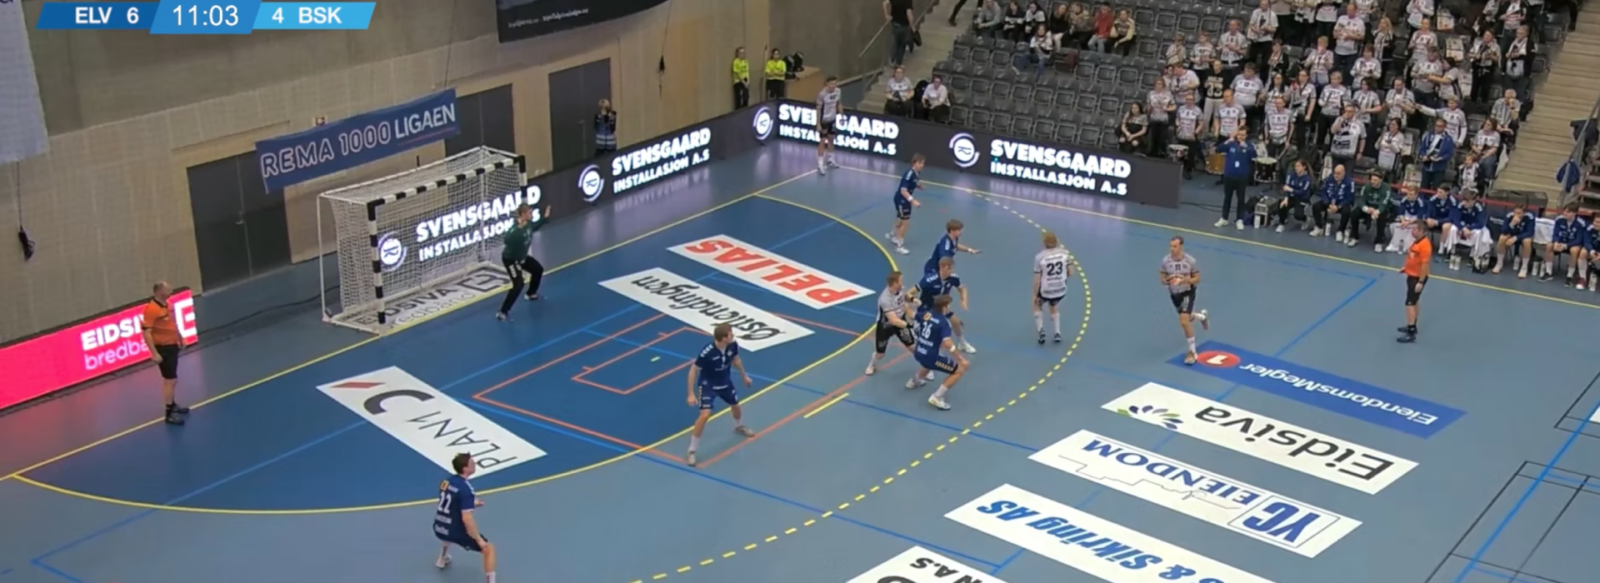 handball spiel live stream